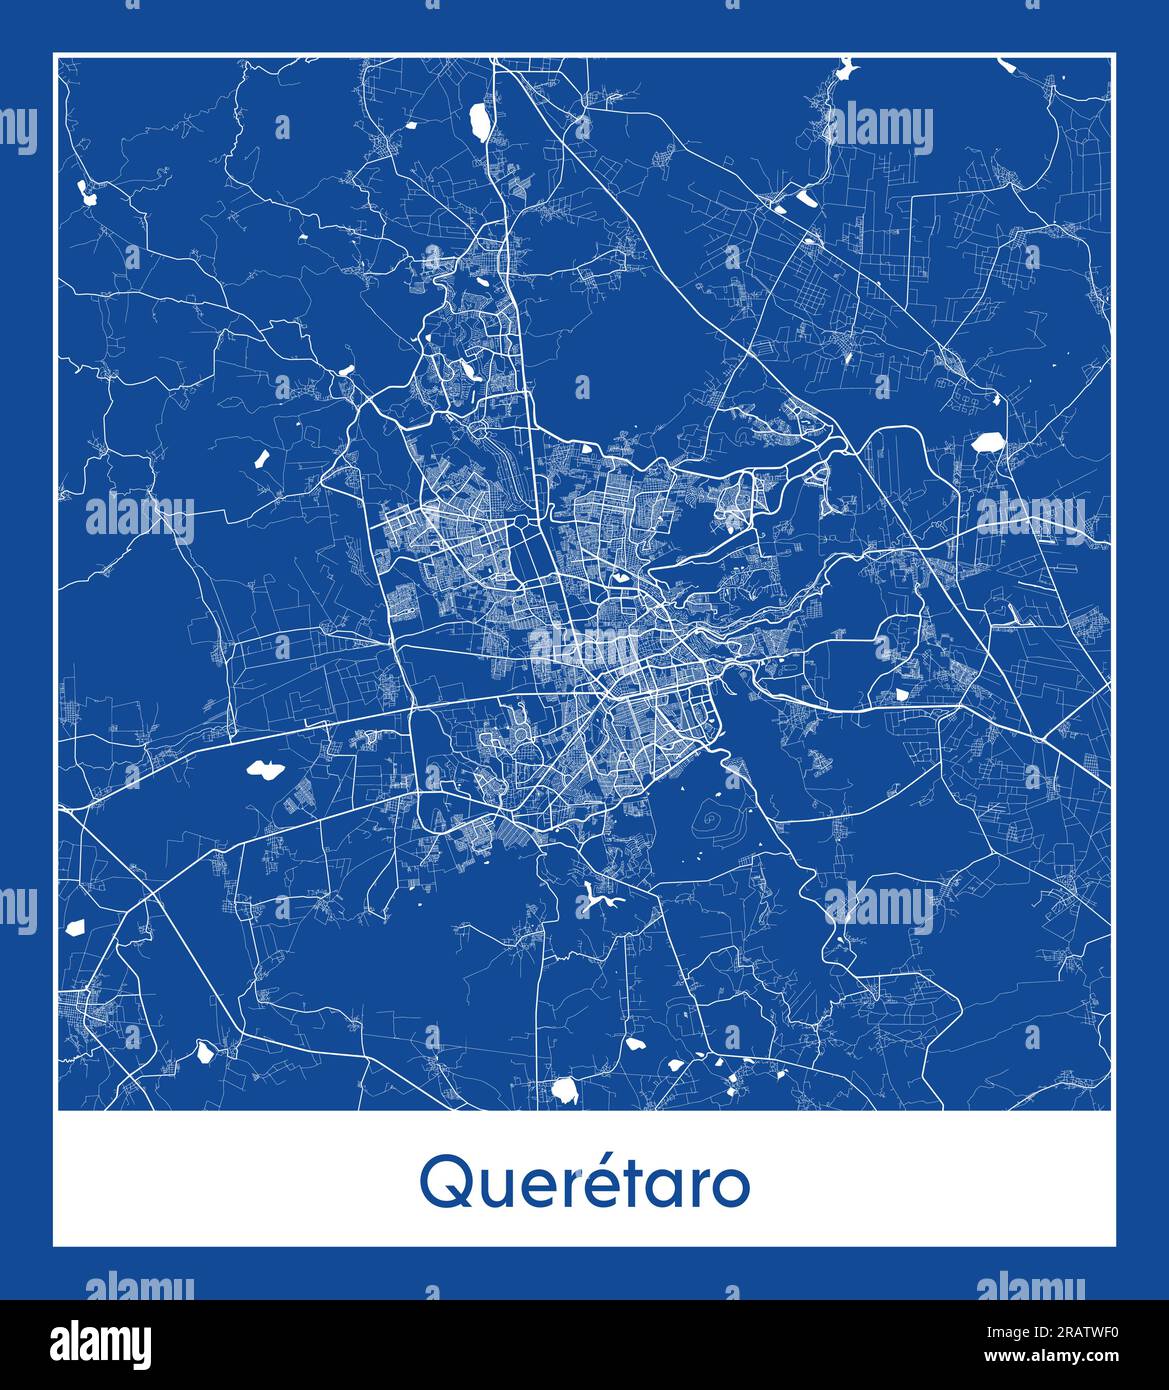 Queretaro Mexique Amérique du Nord carte de la ville illustration vectorielle d'impression bleue Illustration de Vecteur